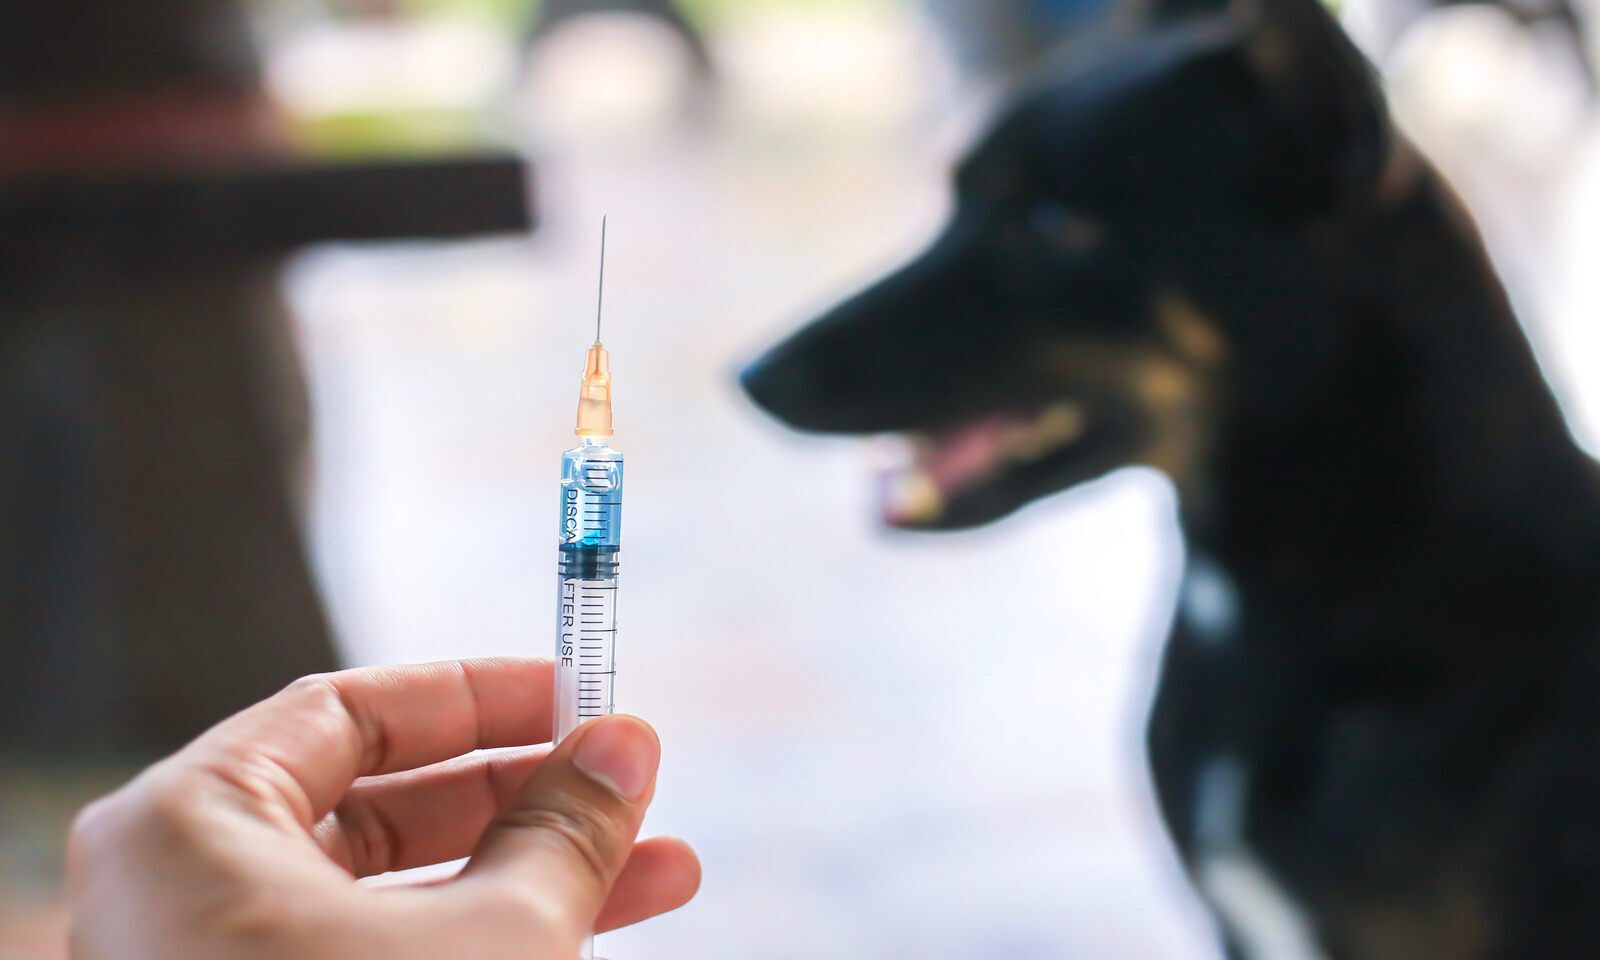 Anti Rabies Injection, इन जानवरों के काटने से फैलता है रैबिज, अब मिलेगा इंजेक्शन